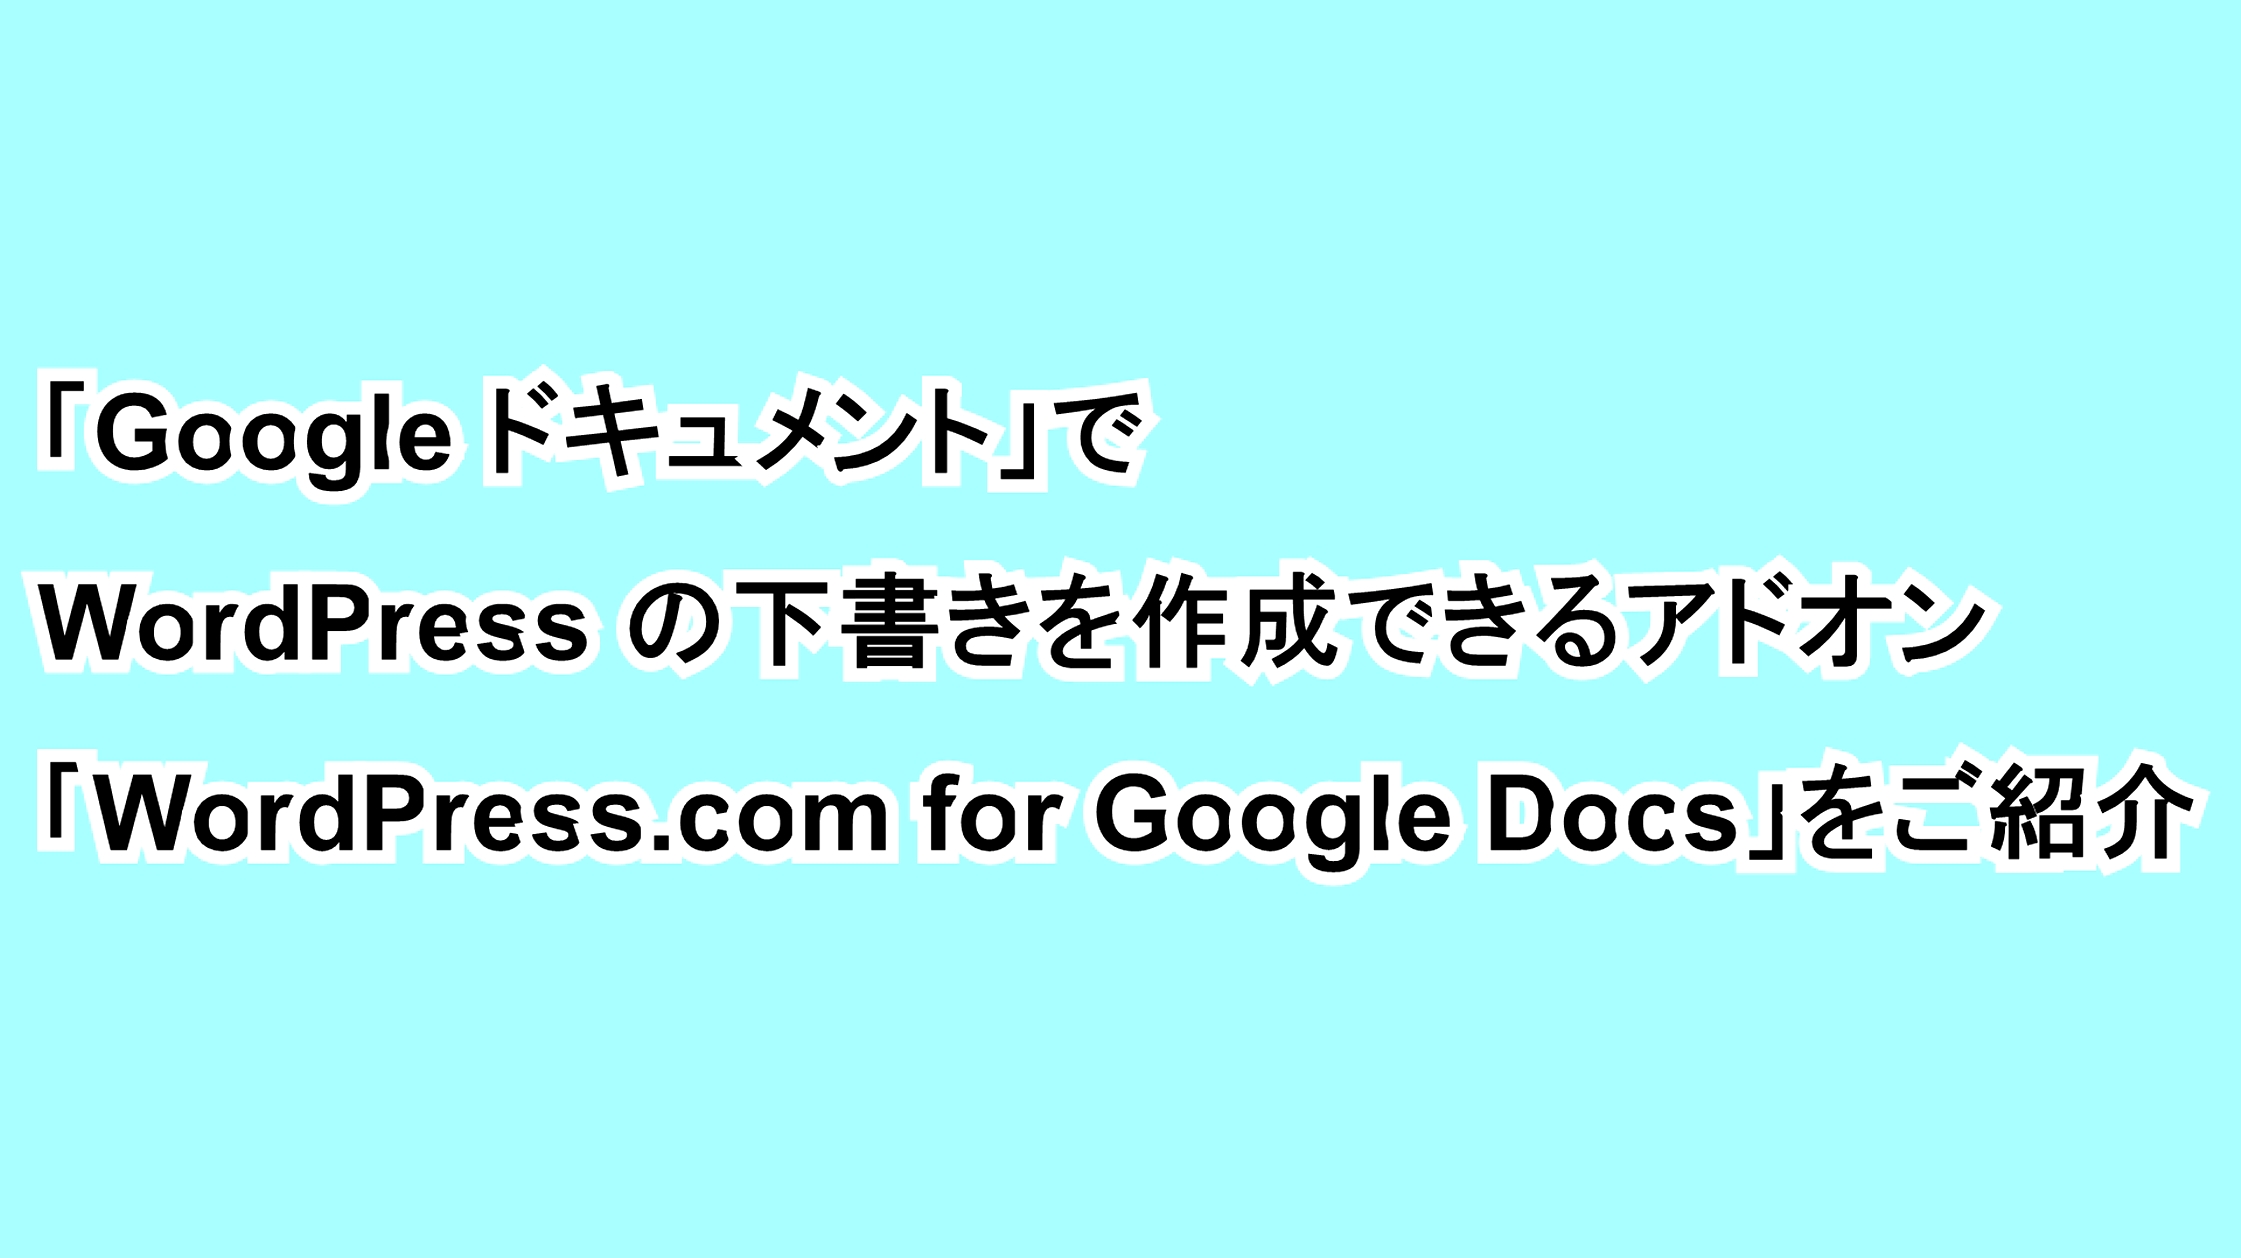 「Google ドキュメント」でWordPressの下書きを作成できるアドオン「WordPress.com for Google Docs」をご紹介